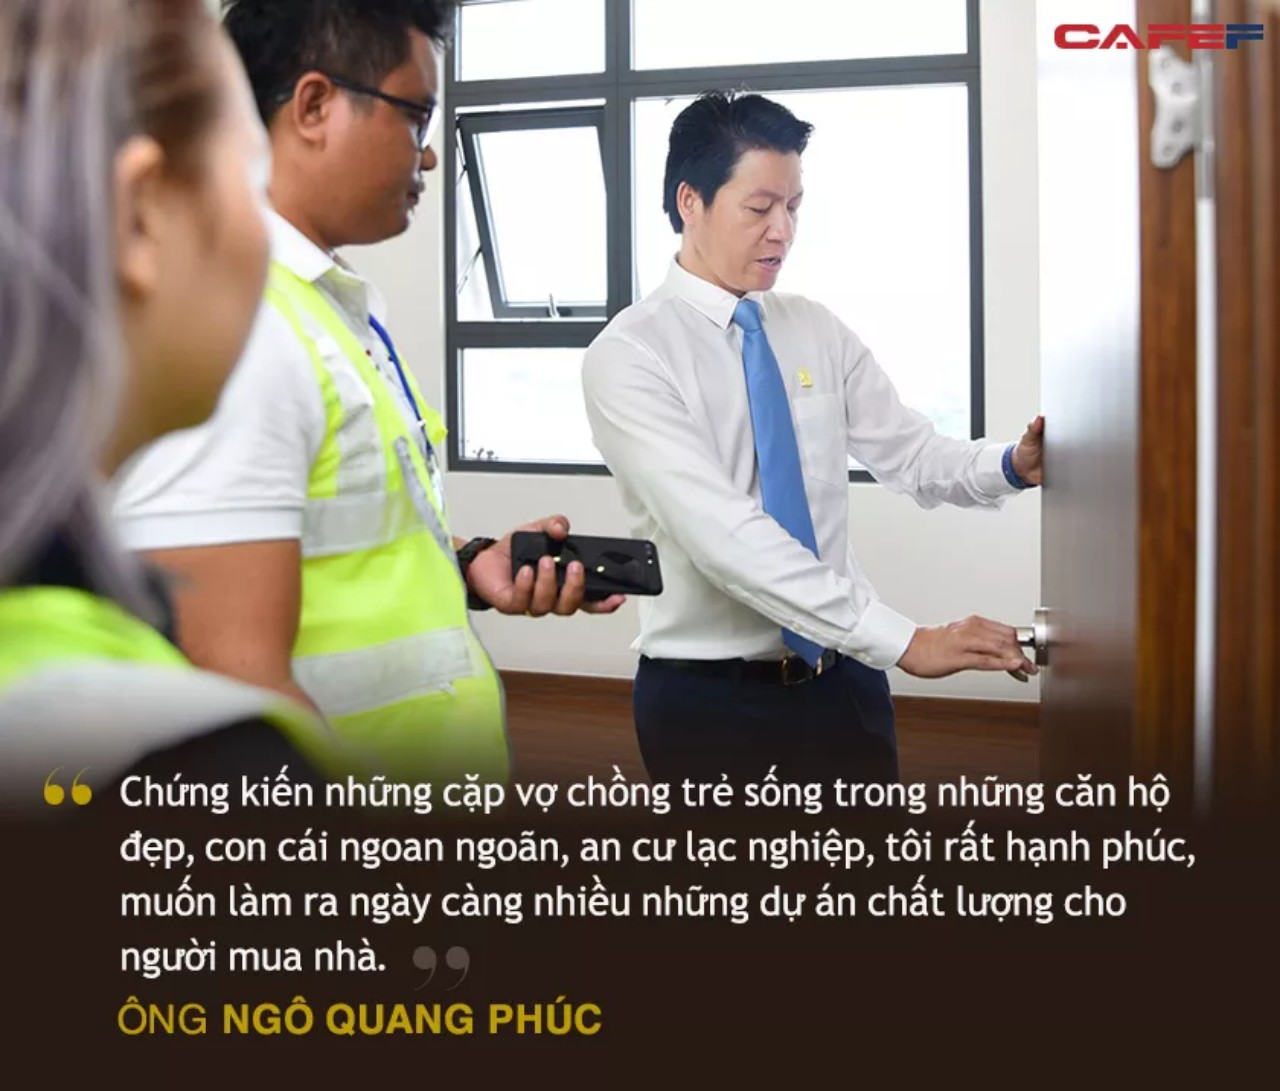 Chân dung CEO Phú Đông Group Ngô Quang Phúc - Từ nhân viên bán BĐS đến thuyền trưởng của những cao ốc chung cư cho giới trẻ - Ảnh 4.